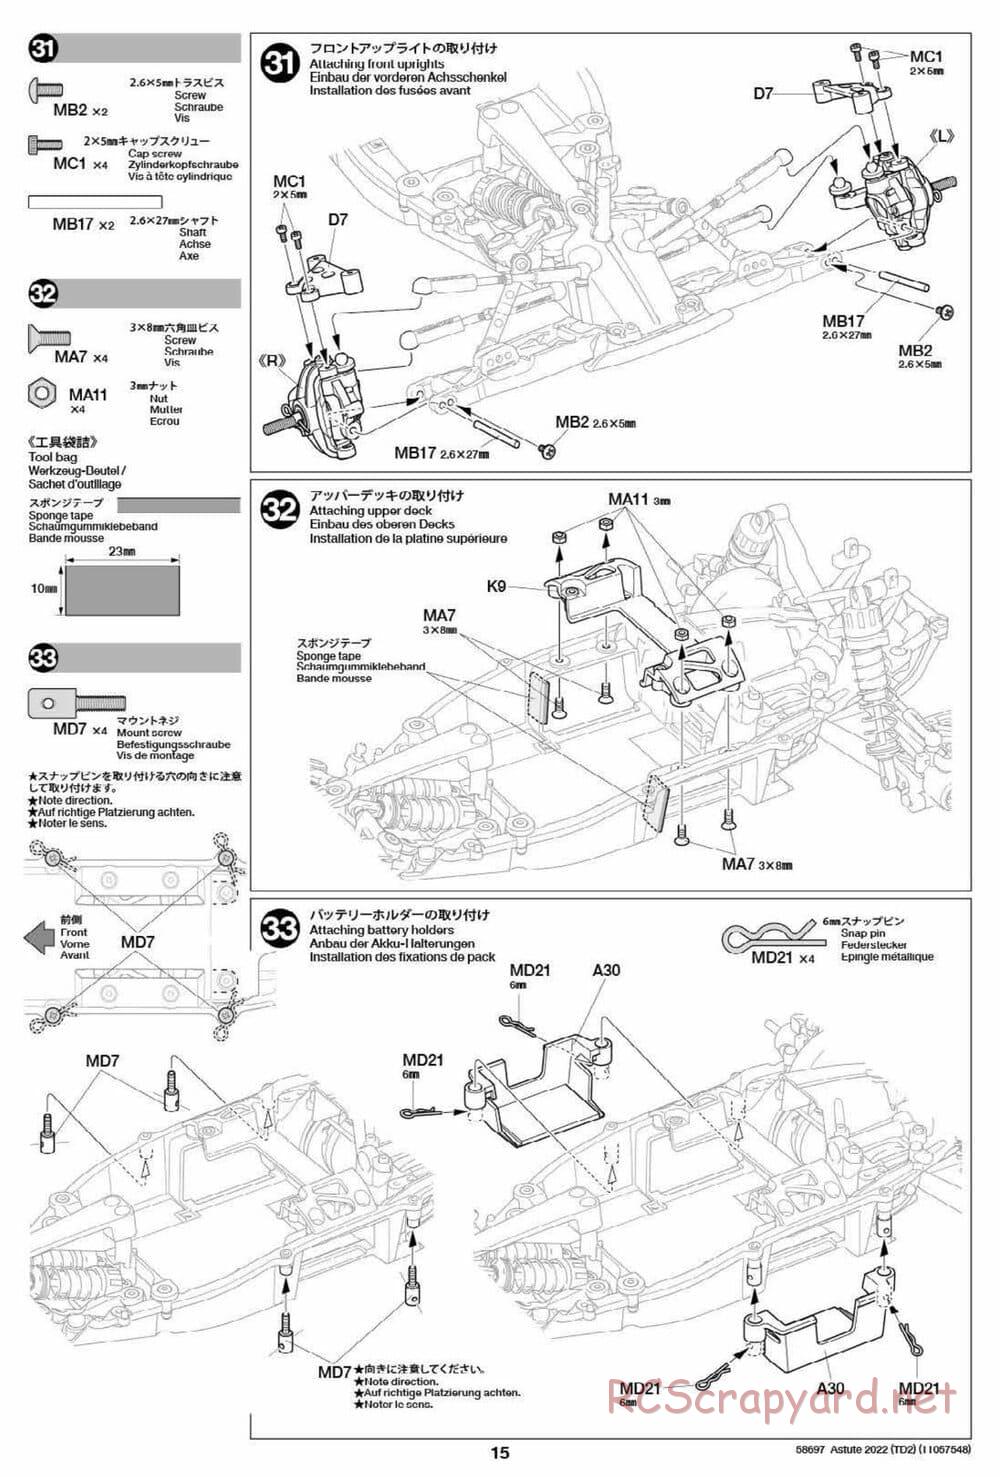 Tamiya - Astute 2022 - TD2 Chassis - Manual - Page 15